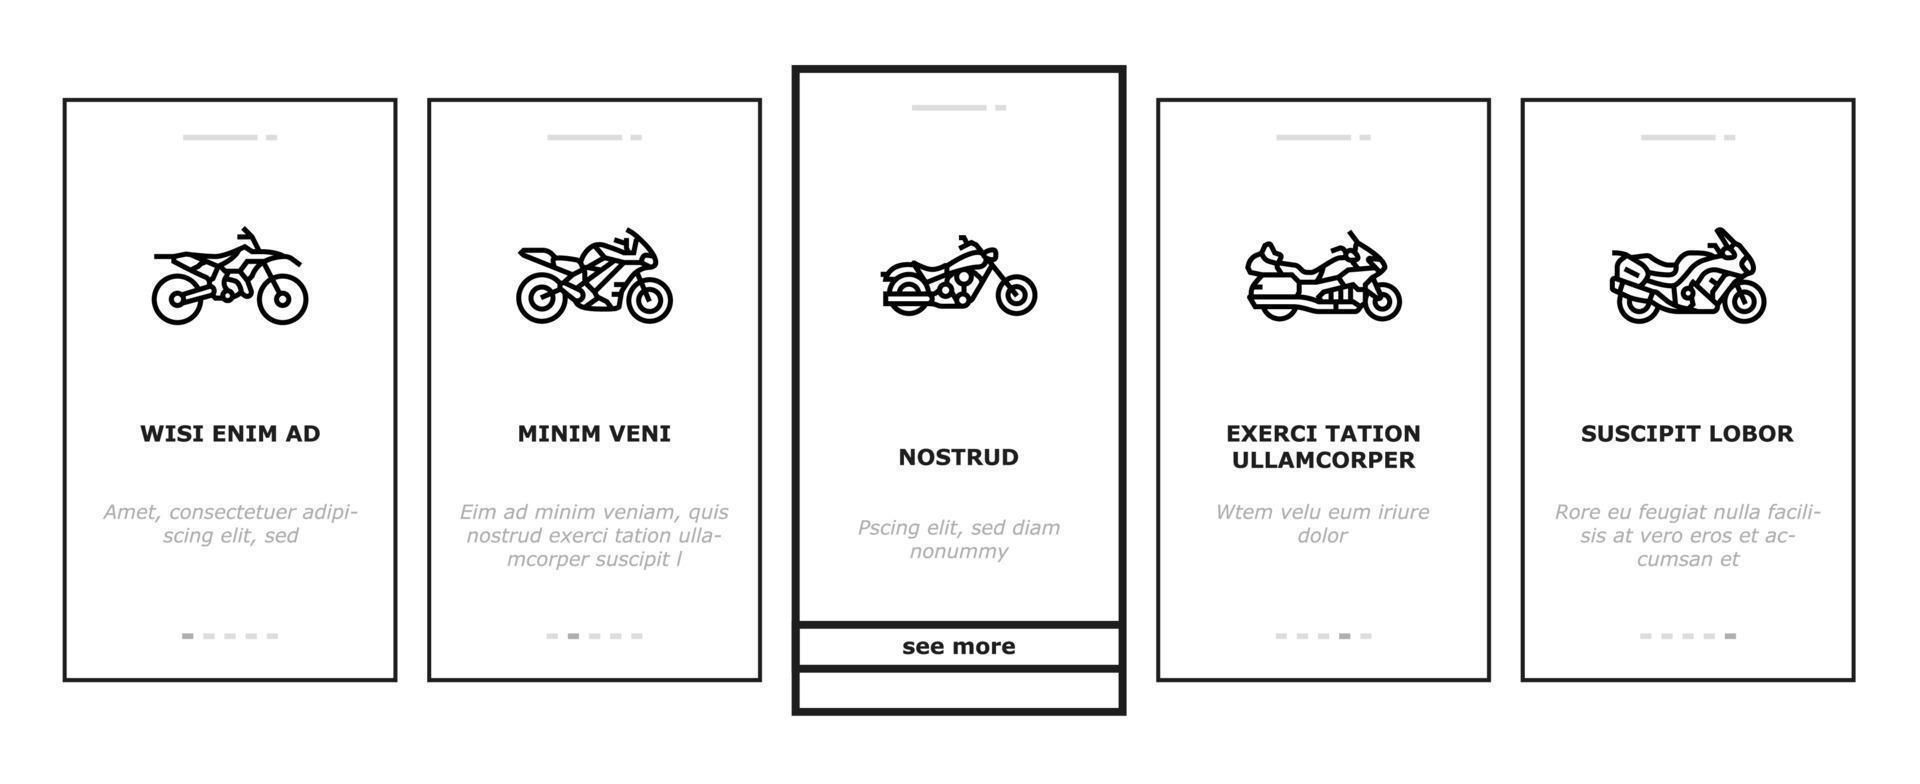 Motorrad-Fahrrad-Transporttypen Onboarding-Symbole setzen Vektor